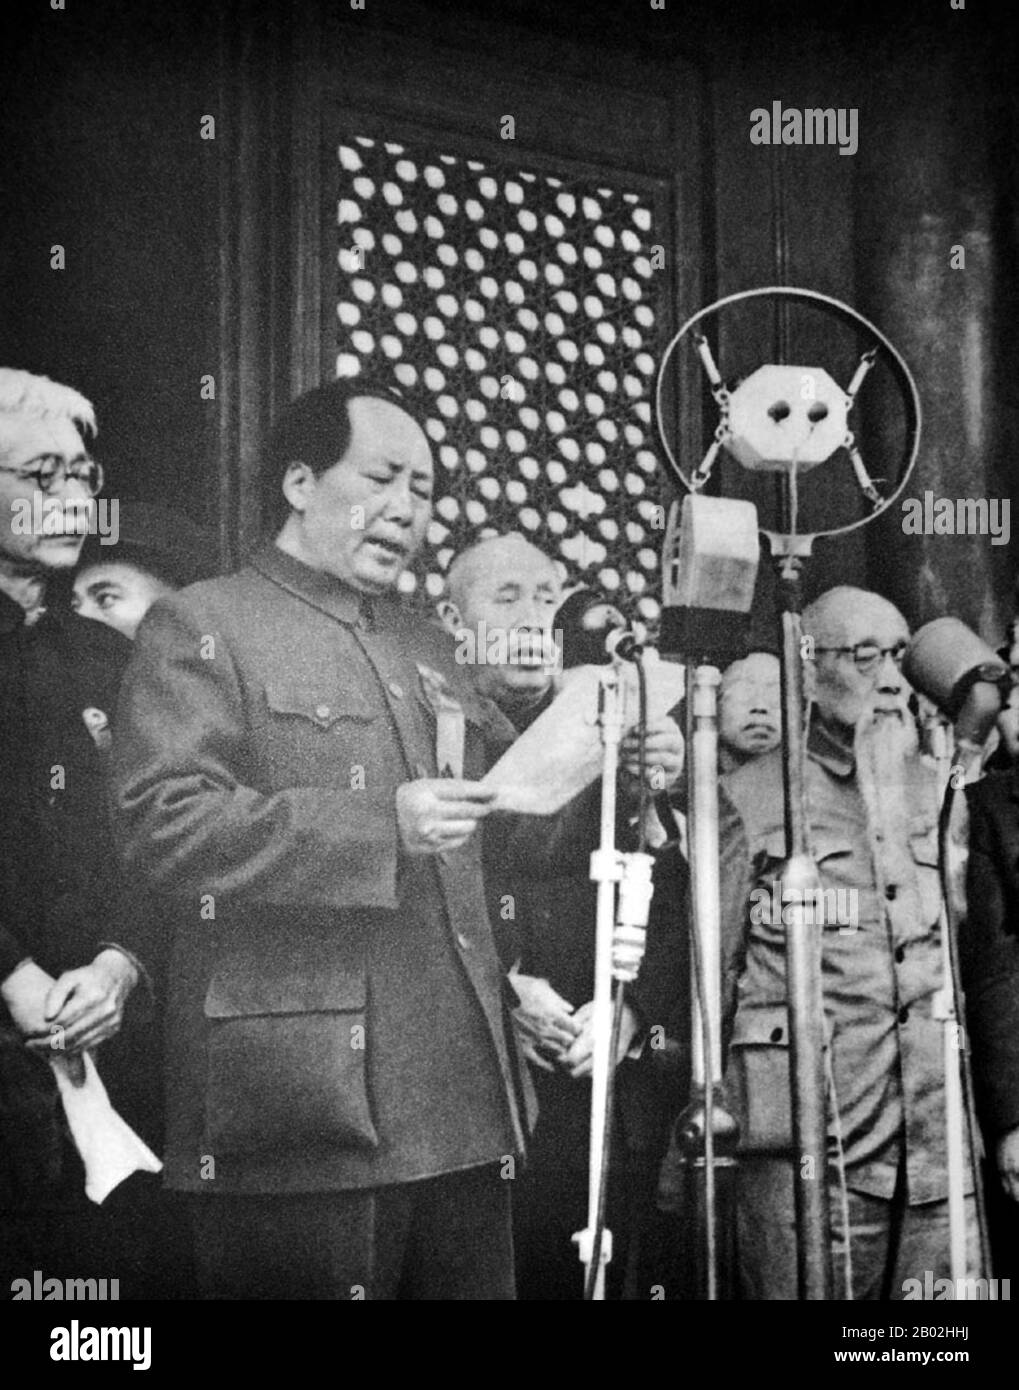 Mao Zedong, également translittéré comme Mao Tse-tung (26 décembre 1893 – 9 septembre 1976), était un révolutionnaire communiste chinois, un stratège de guérilla, un auteur, un théoricien politique et un chef de la Révolution chinoise. Communément appelé Président Mao, il était l'architecte de la République Populaire de Chine (RPC) depuis sa création en 1949 et il a exercé un contrôle autoritaire sur la nation jusqu'à sa mort en 1976. La contribution théorique de MAO au marxisme-léninisme, ainsi que ses stratégies militaires et sa marque de politiques politiques, sont maintenant collectivement connues sous le nom de Maoïsme. Banque D'Images